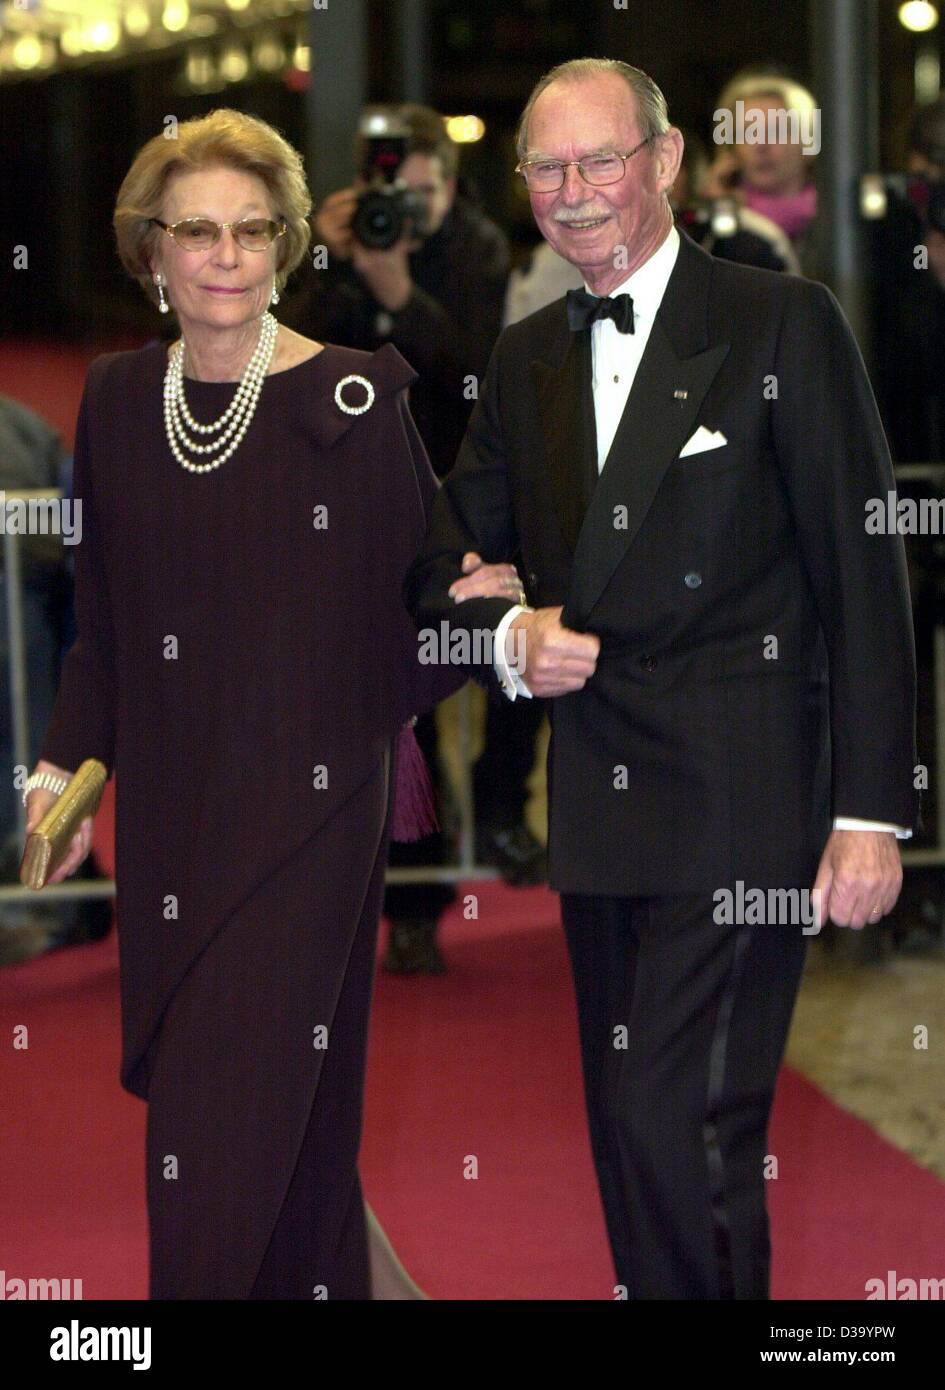 dpa-los-invitados-a-la-fiesta-de-cumpleanos-de-la-reina-beatriz-en-amsterdam-el-gran-duque-jean-de-luxemburgo-y-su-esposa-la-gran-duquesa-josefina-carlota-llega-para-una-cena-privada-en-el-palacio-real-de-amsterdam-enero-31-2002-los-holandeses-la-reina-beatriz-celebra-su-64-cumpleanos-dos-dias-antes-de-la-fecha-en-que-nos-d39ypw.jpg